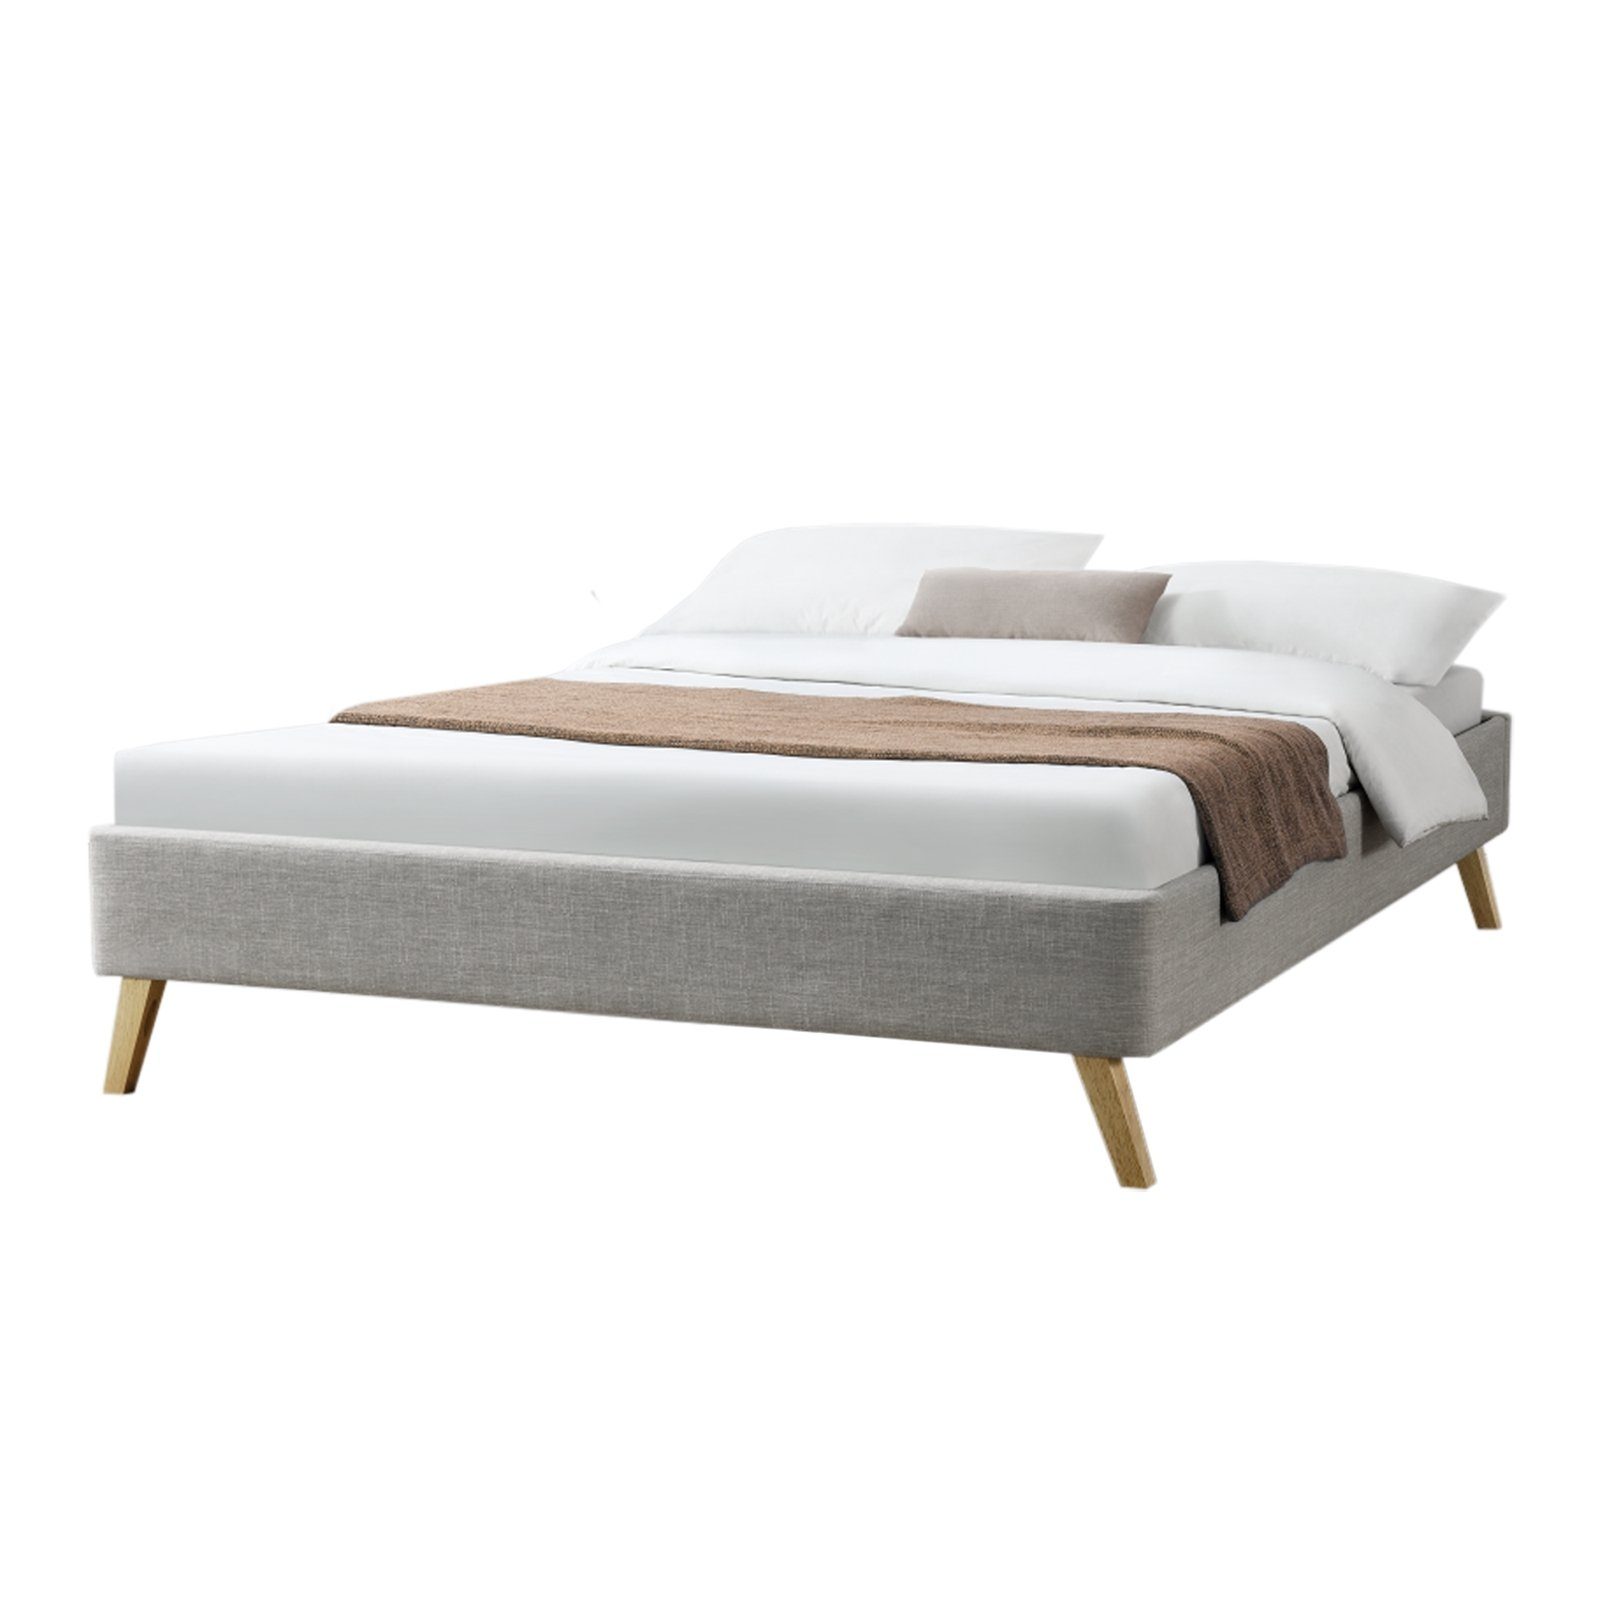 HTI-Living Bett Bett 140 x 200 cm Carl, Rahmen aus Holz mit Bezug aus  Polyester online kaufen | OTTO